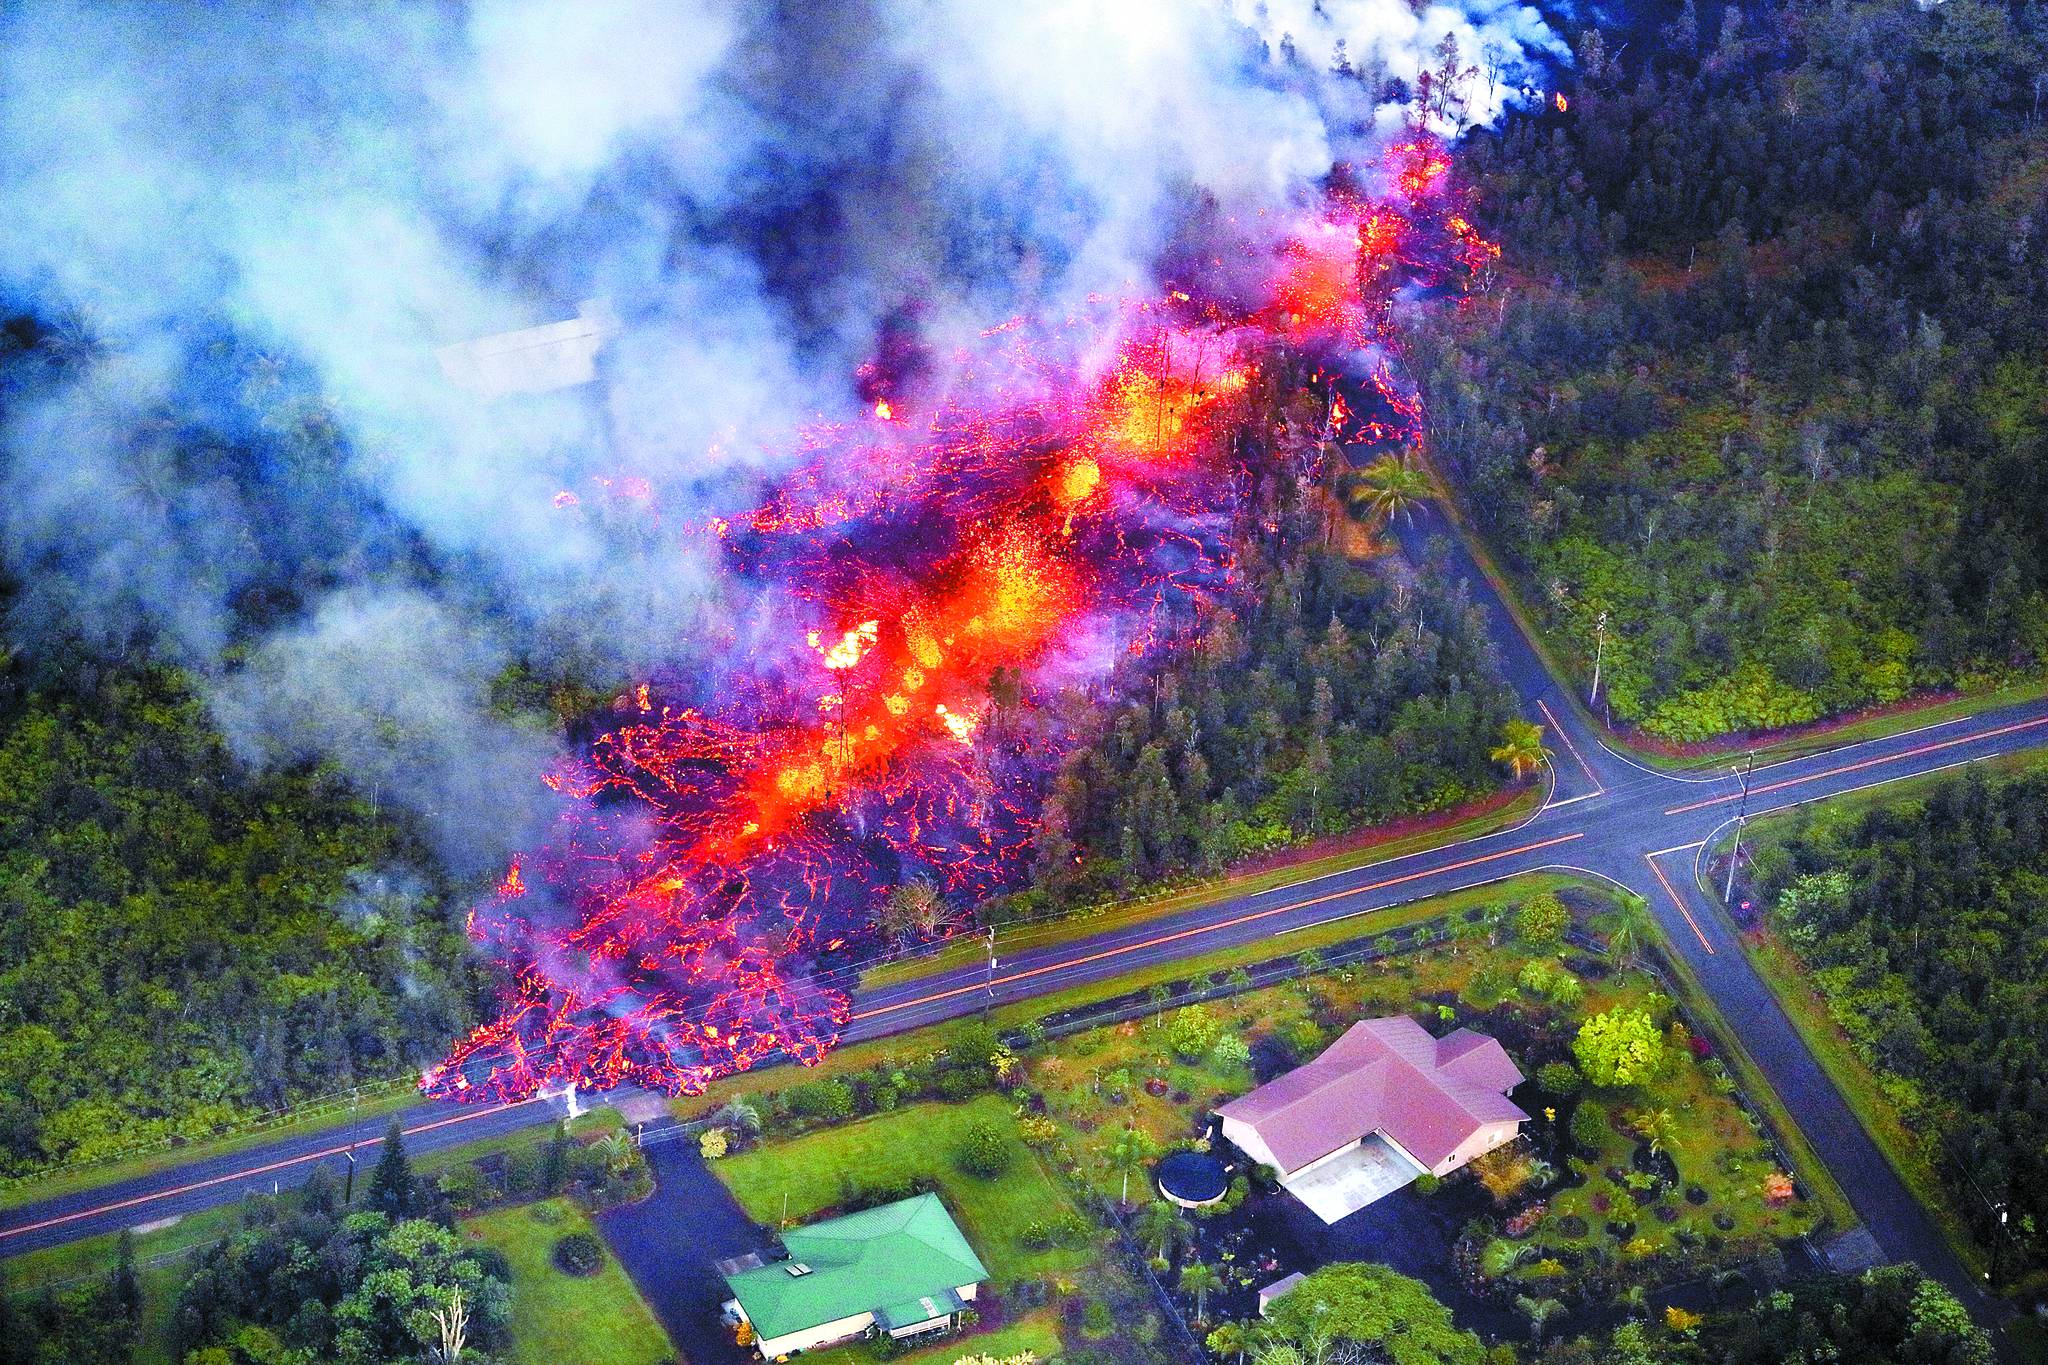 하와이 화산 폭발